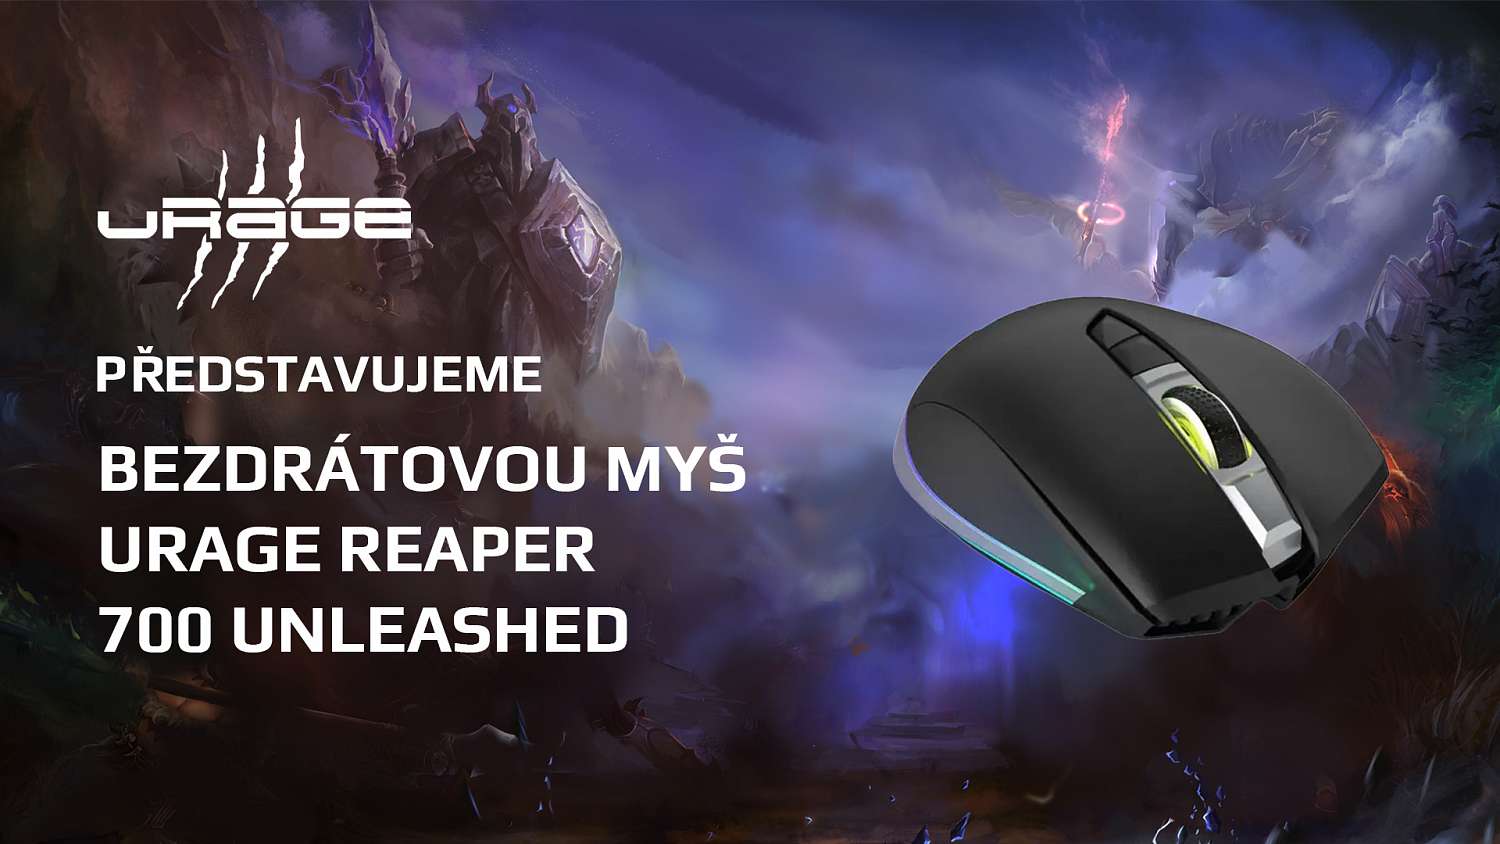 Bezdrátová myš uRage Reaper 700 Unleashed – bez kabelu a s mnoha tlačítky za rozumnou cenu